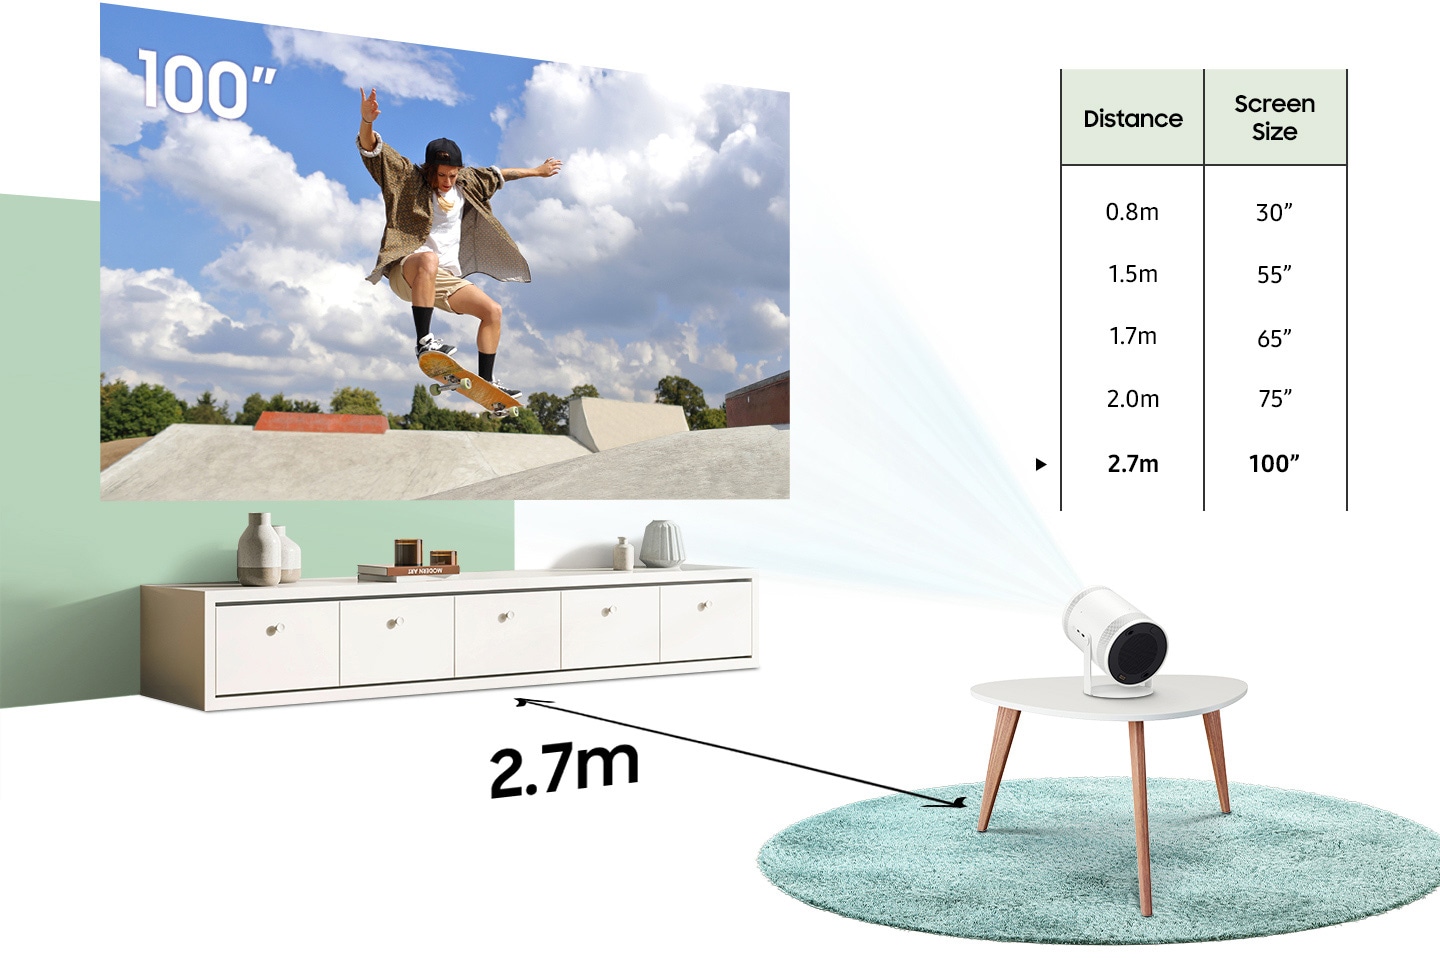 Khi The Freestyle di chuyển từ cách bức tường 0,8 mét lên 1,5, 1,7, 2,0 và 2,7 mét, kích thước màn hình chiếu sẽ tăng từ 30 inch lên 55, 65, 75 và 100 inch.